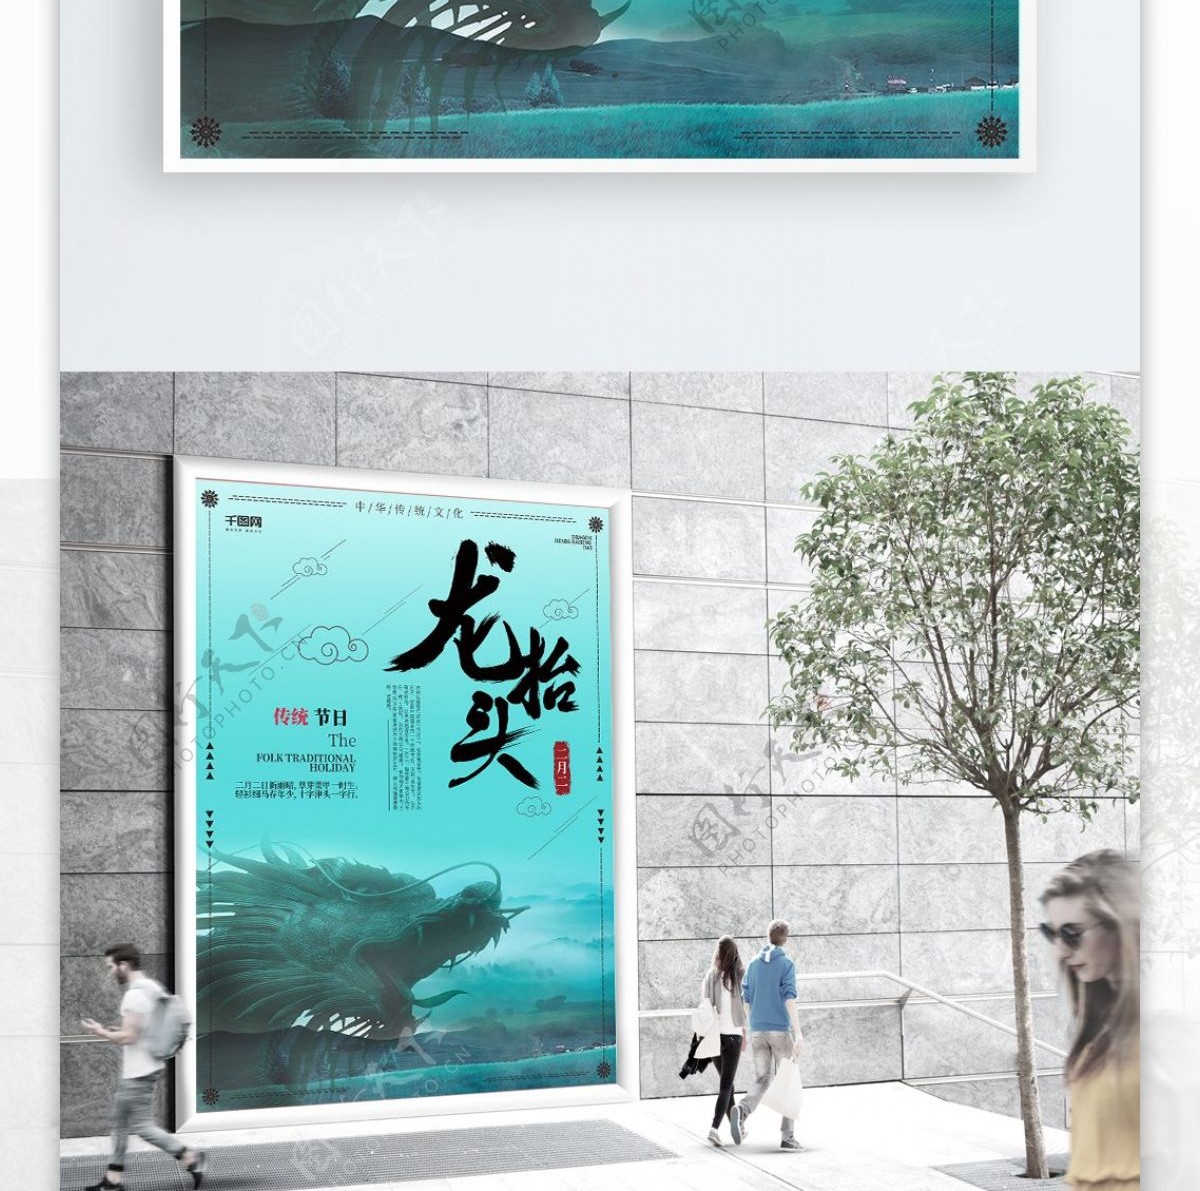 青色绿色古风复古中国风二月二龙抬头海报